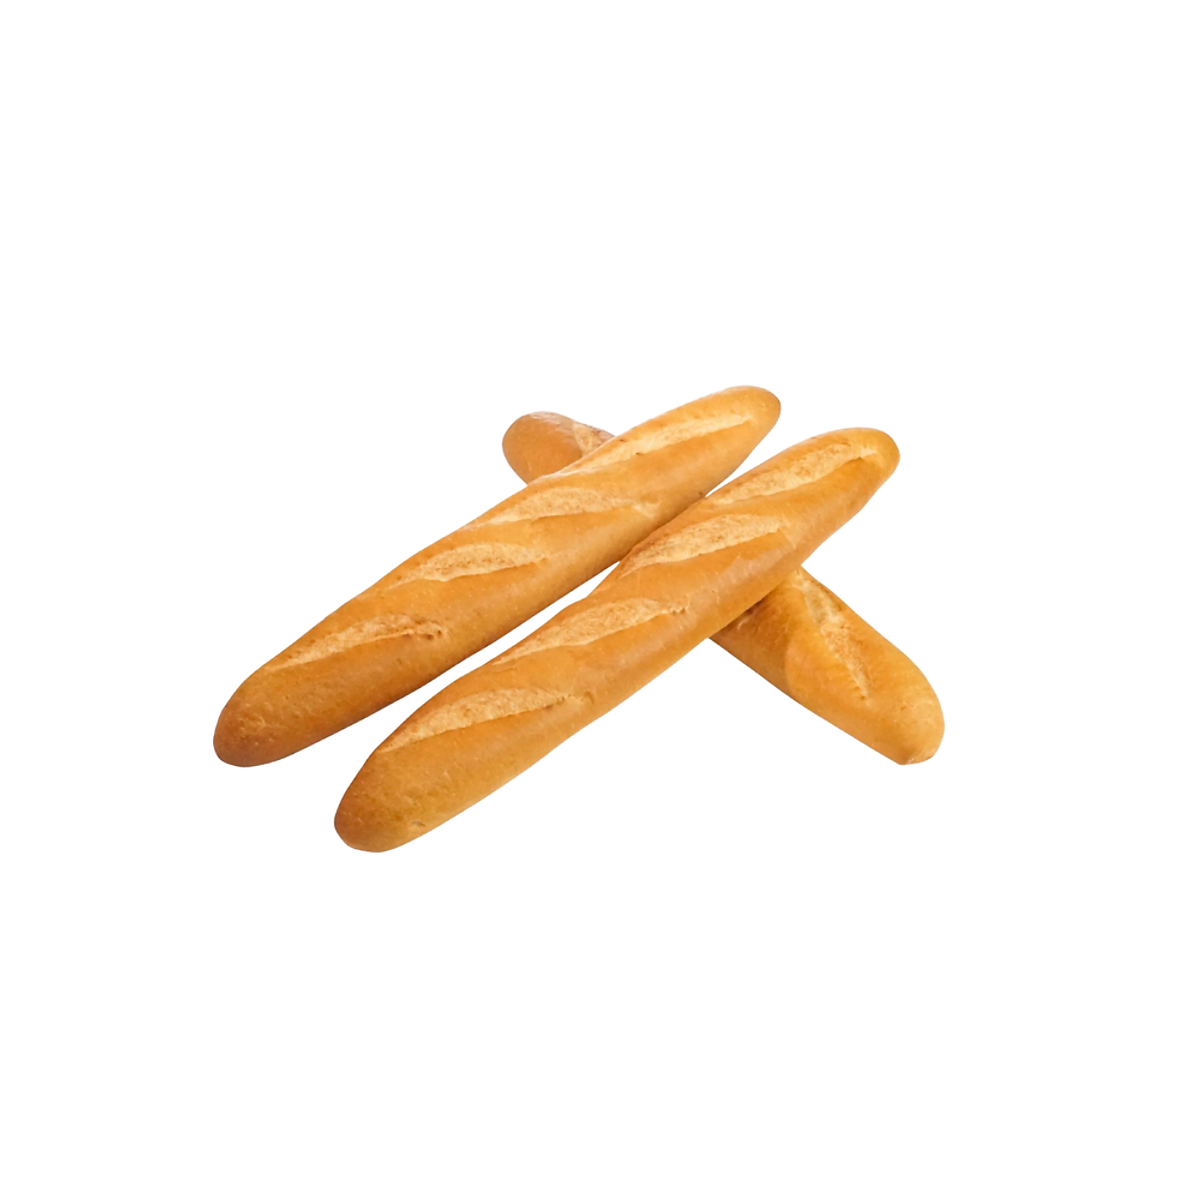 Bánh mì Nordic half baguette (pcs) - Bánh quy, bánh ngọt